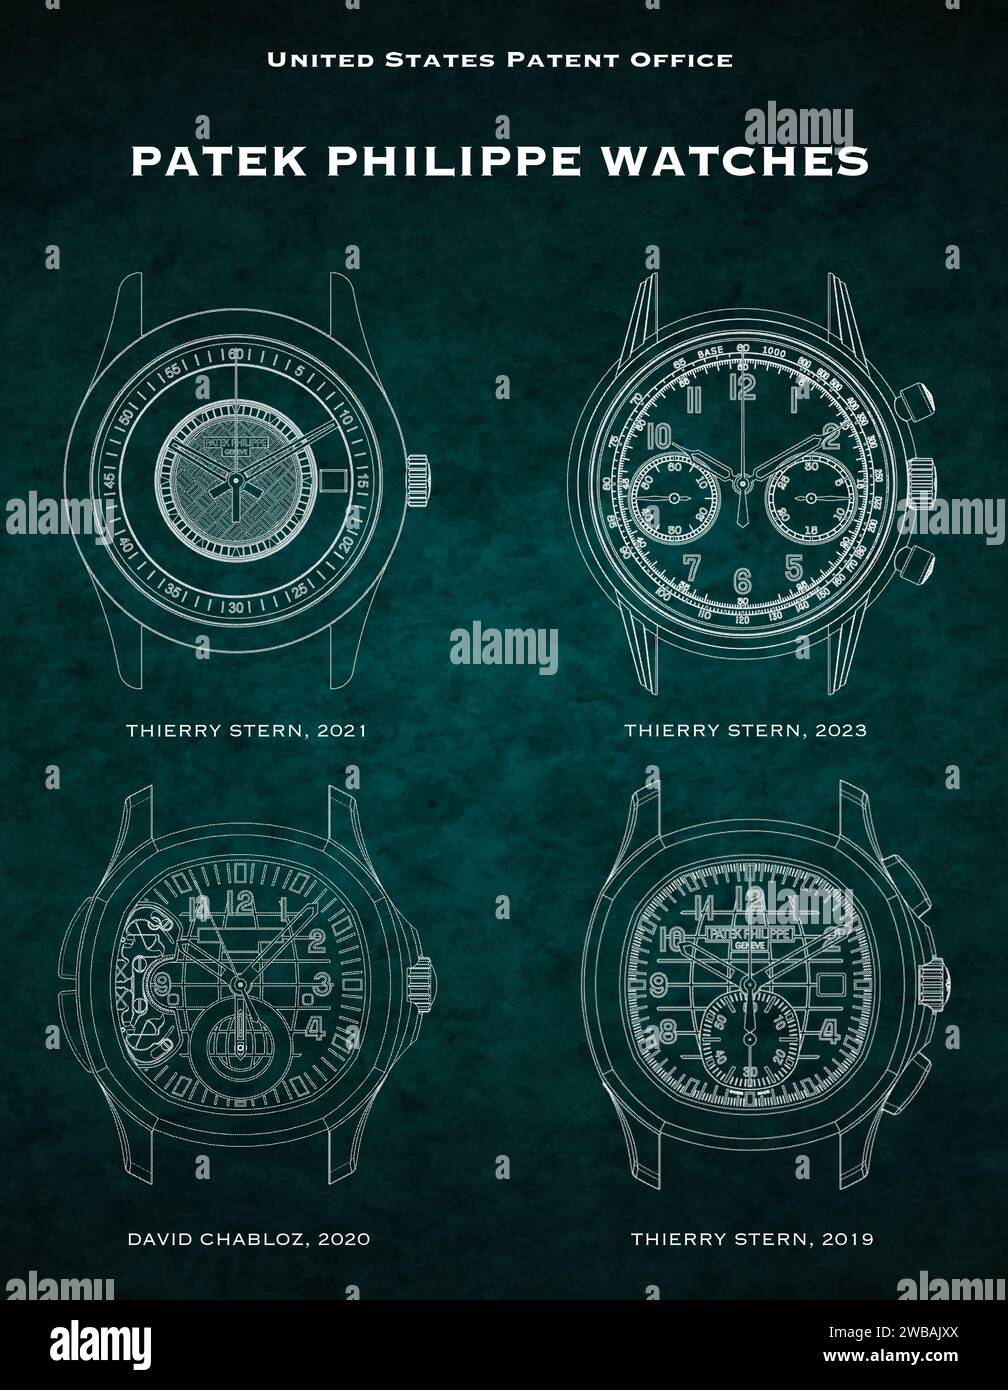 US-Patentamt Designs von Uhrenscheiben für Patek Philippe Uhren auf grünem grungy Hintergrund Stockfoto